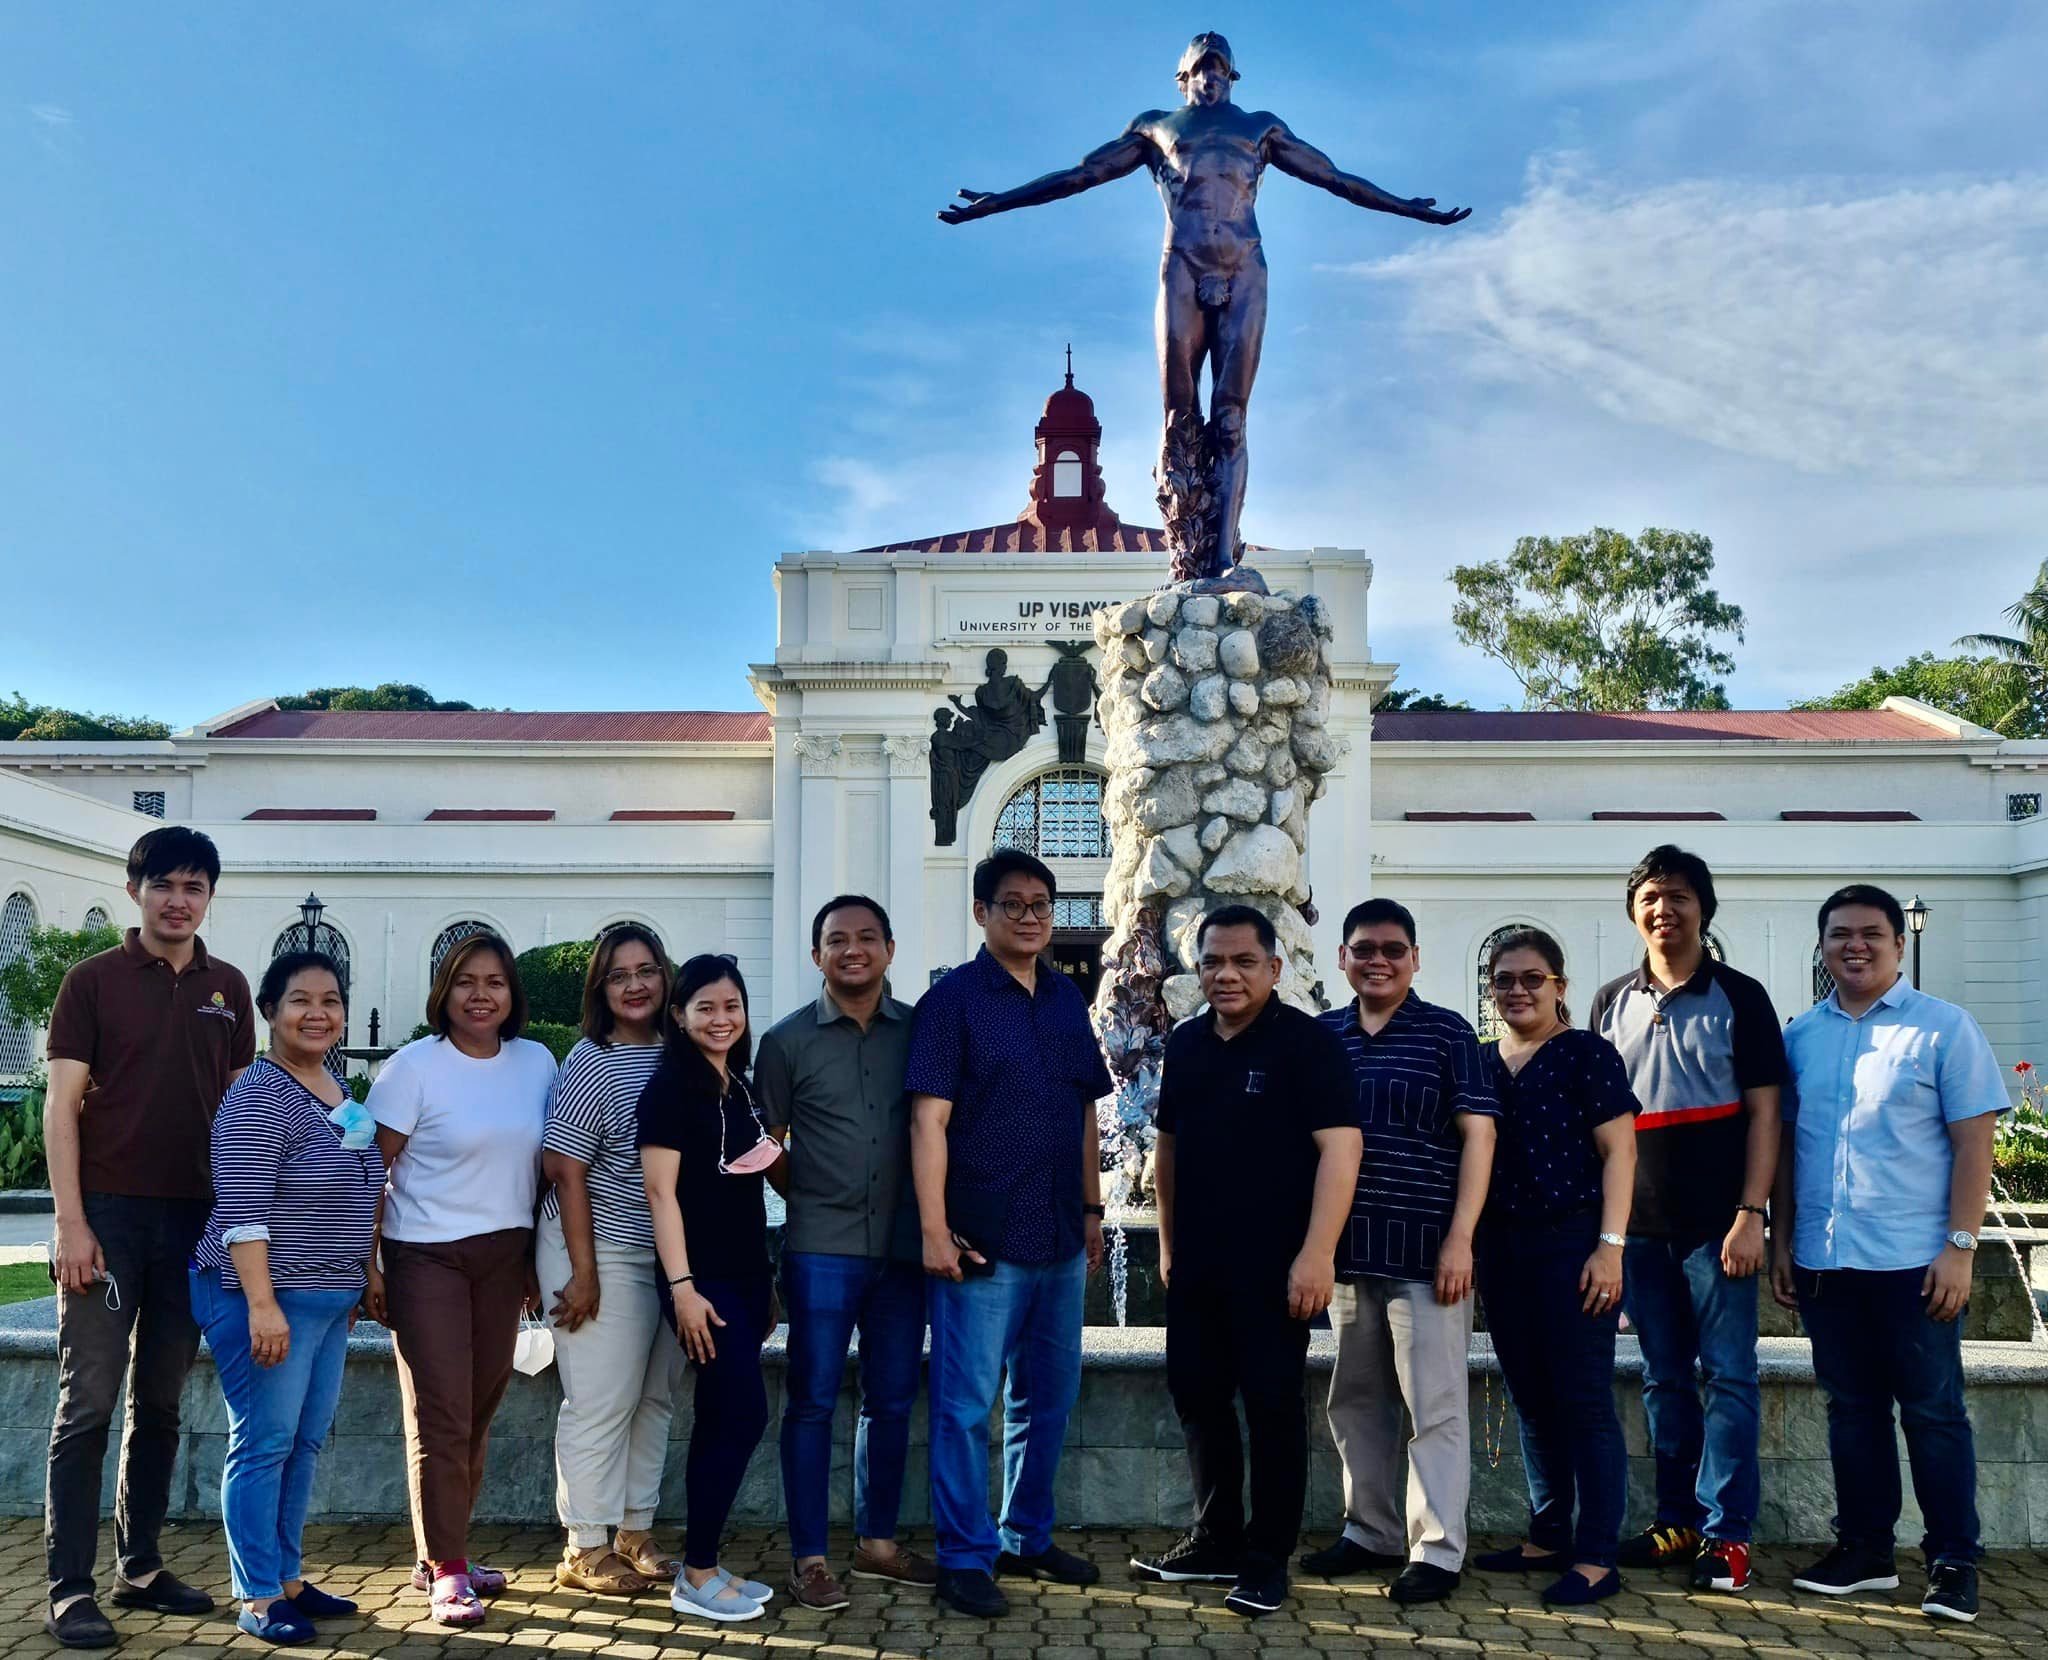 UPLB & CEM Visits UP Visayas for Benchmarking of BS Accountancy Program